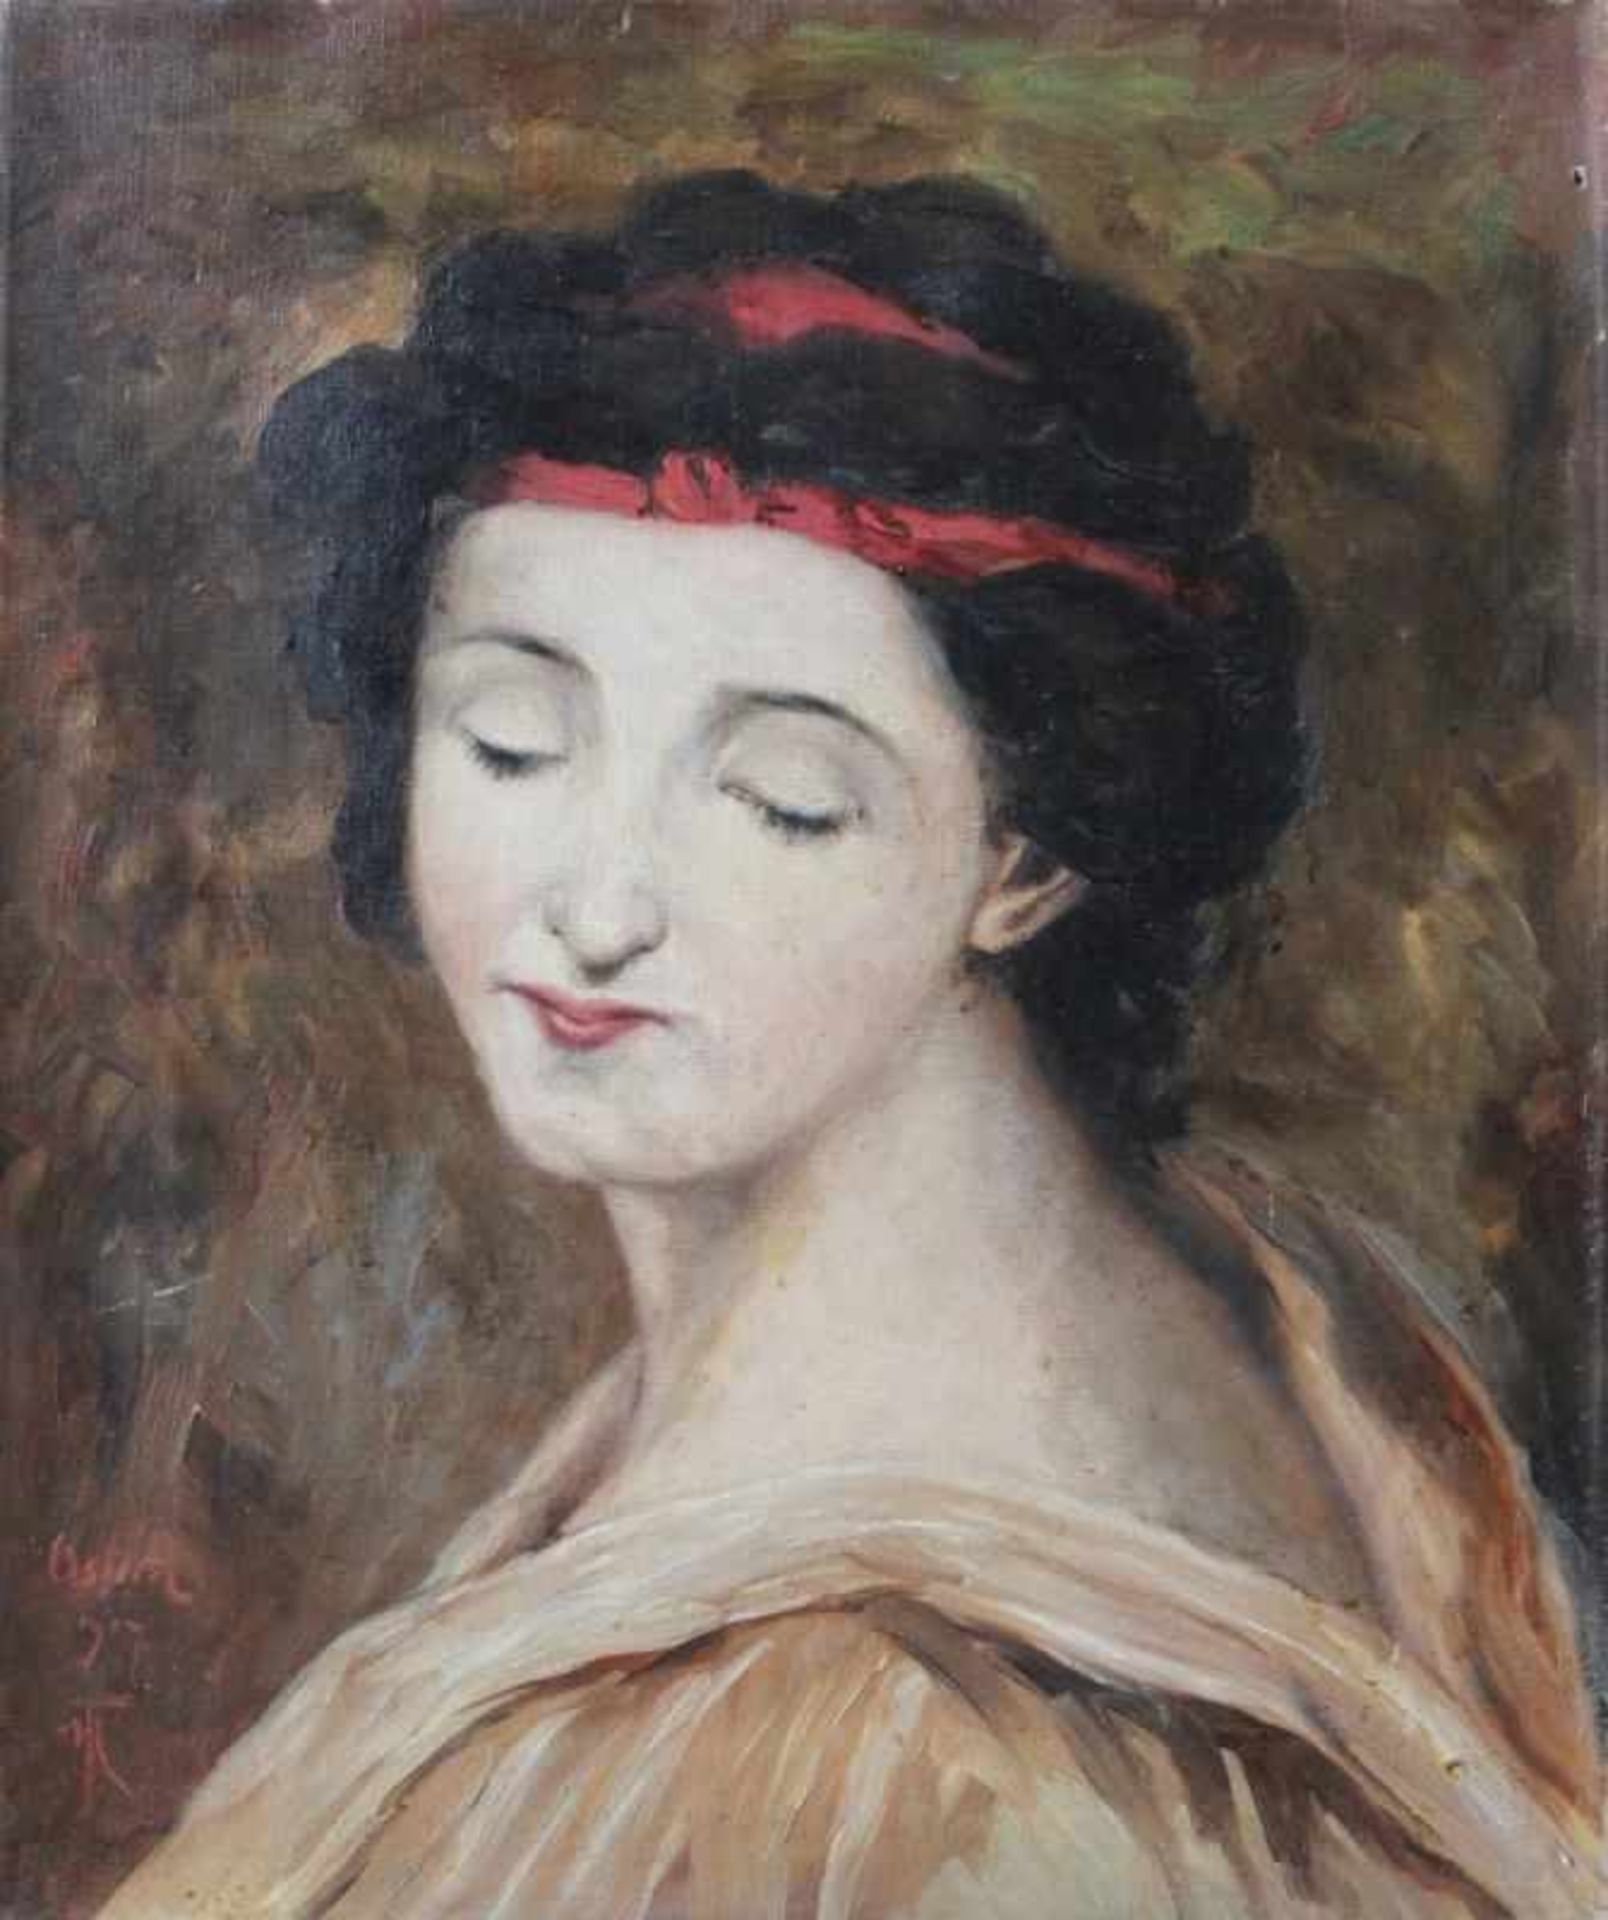 Gemälde - Monogrammist (19./20.Jahrhundert) "Damenbildnis", undeutlich ligiert monogrammiert FH o.